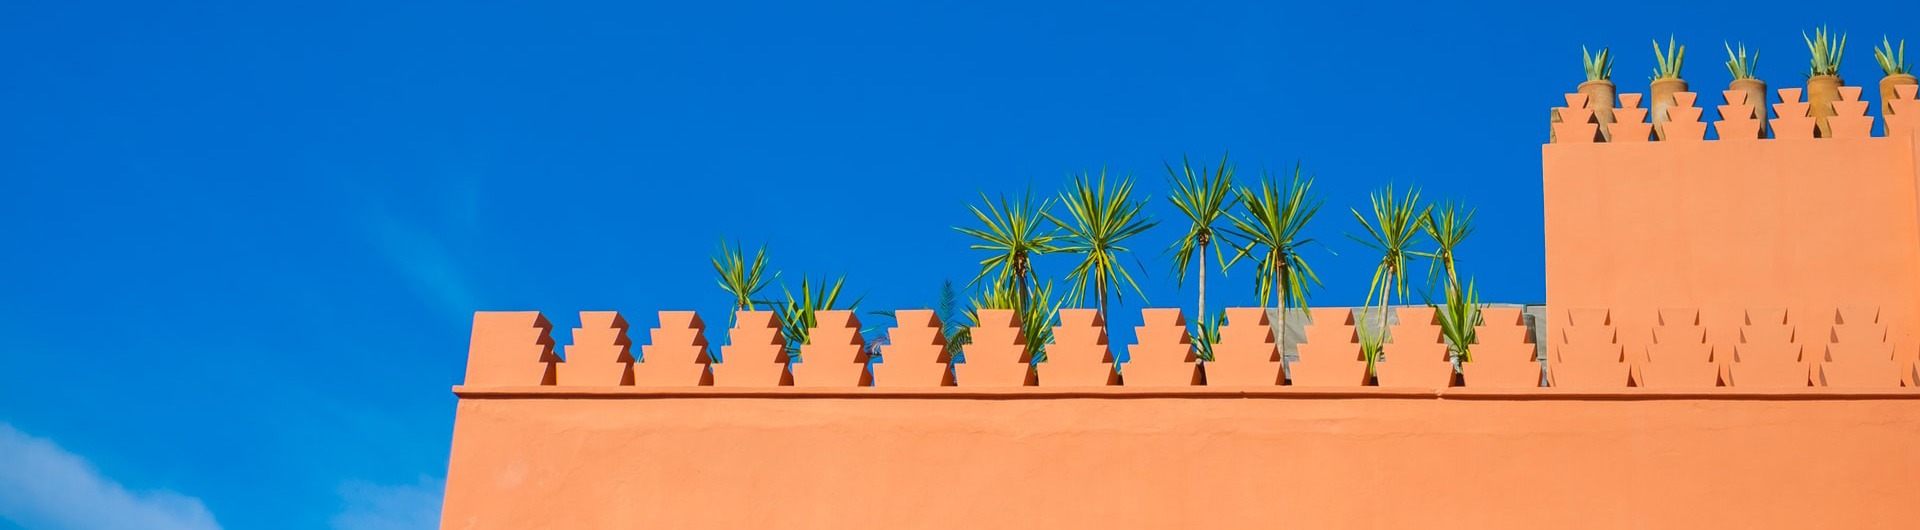 Architecture in Morocco